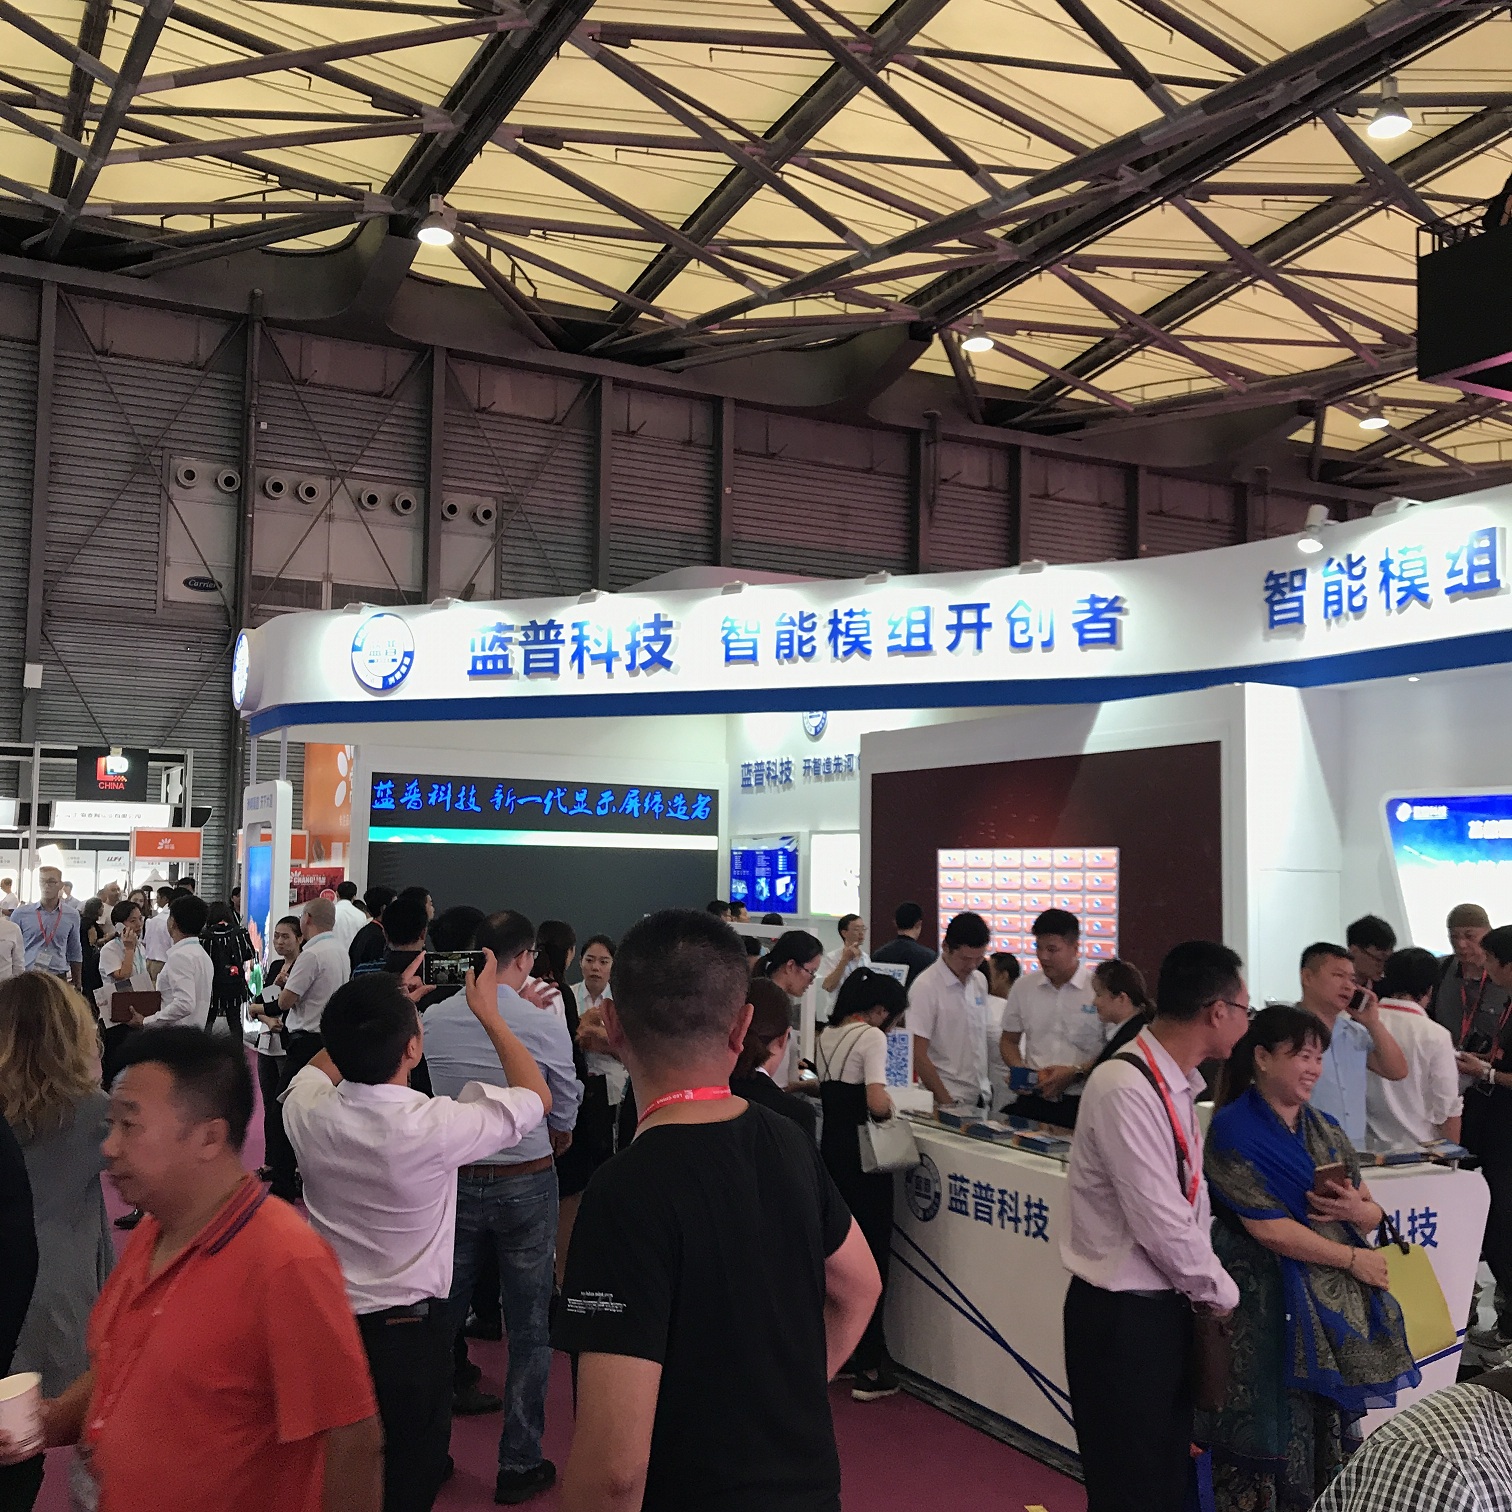 新一代显示屏缔造者——蓝普科技盛装亮相上海国际LED展